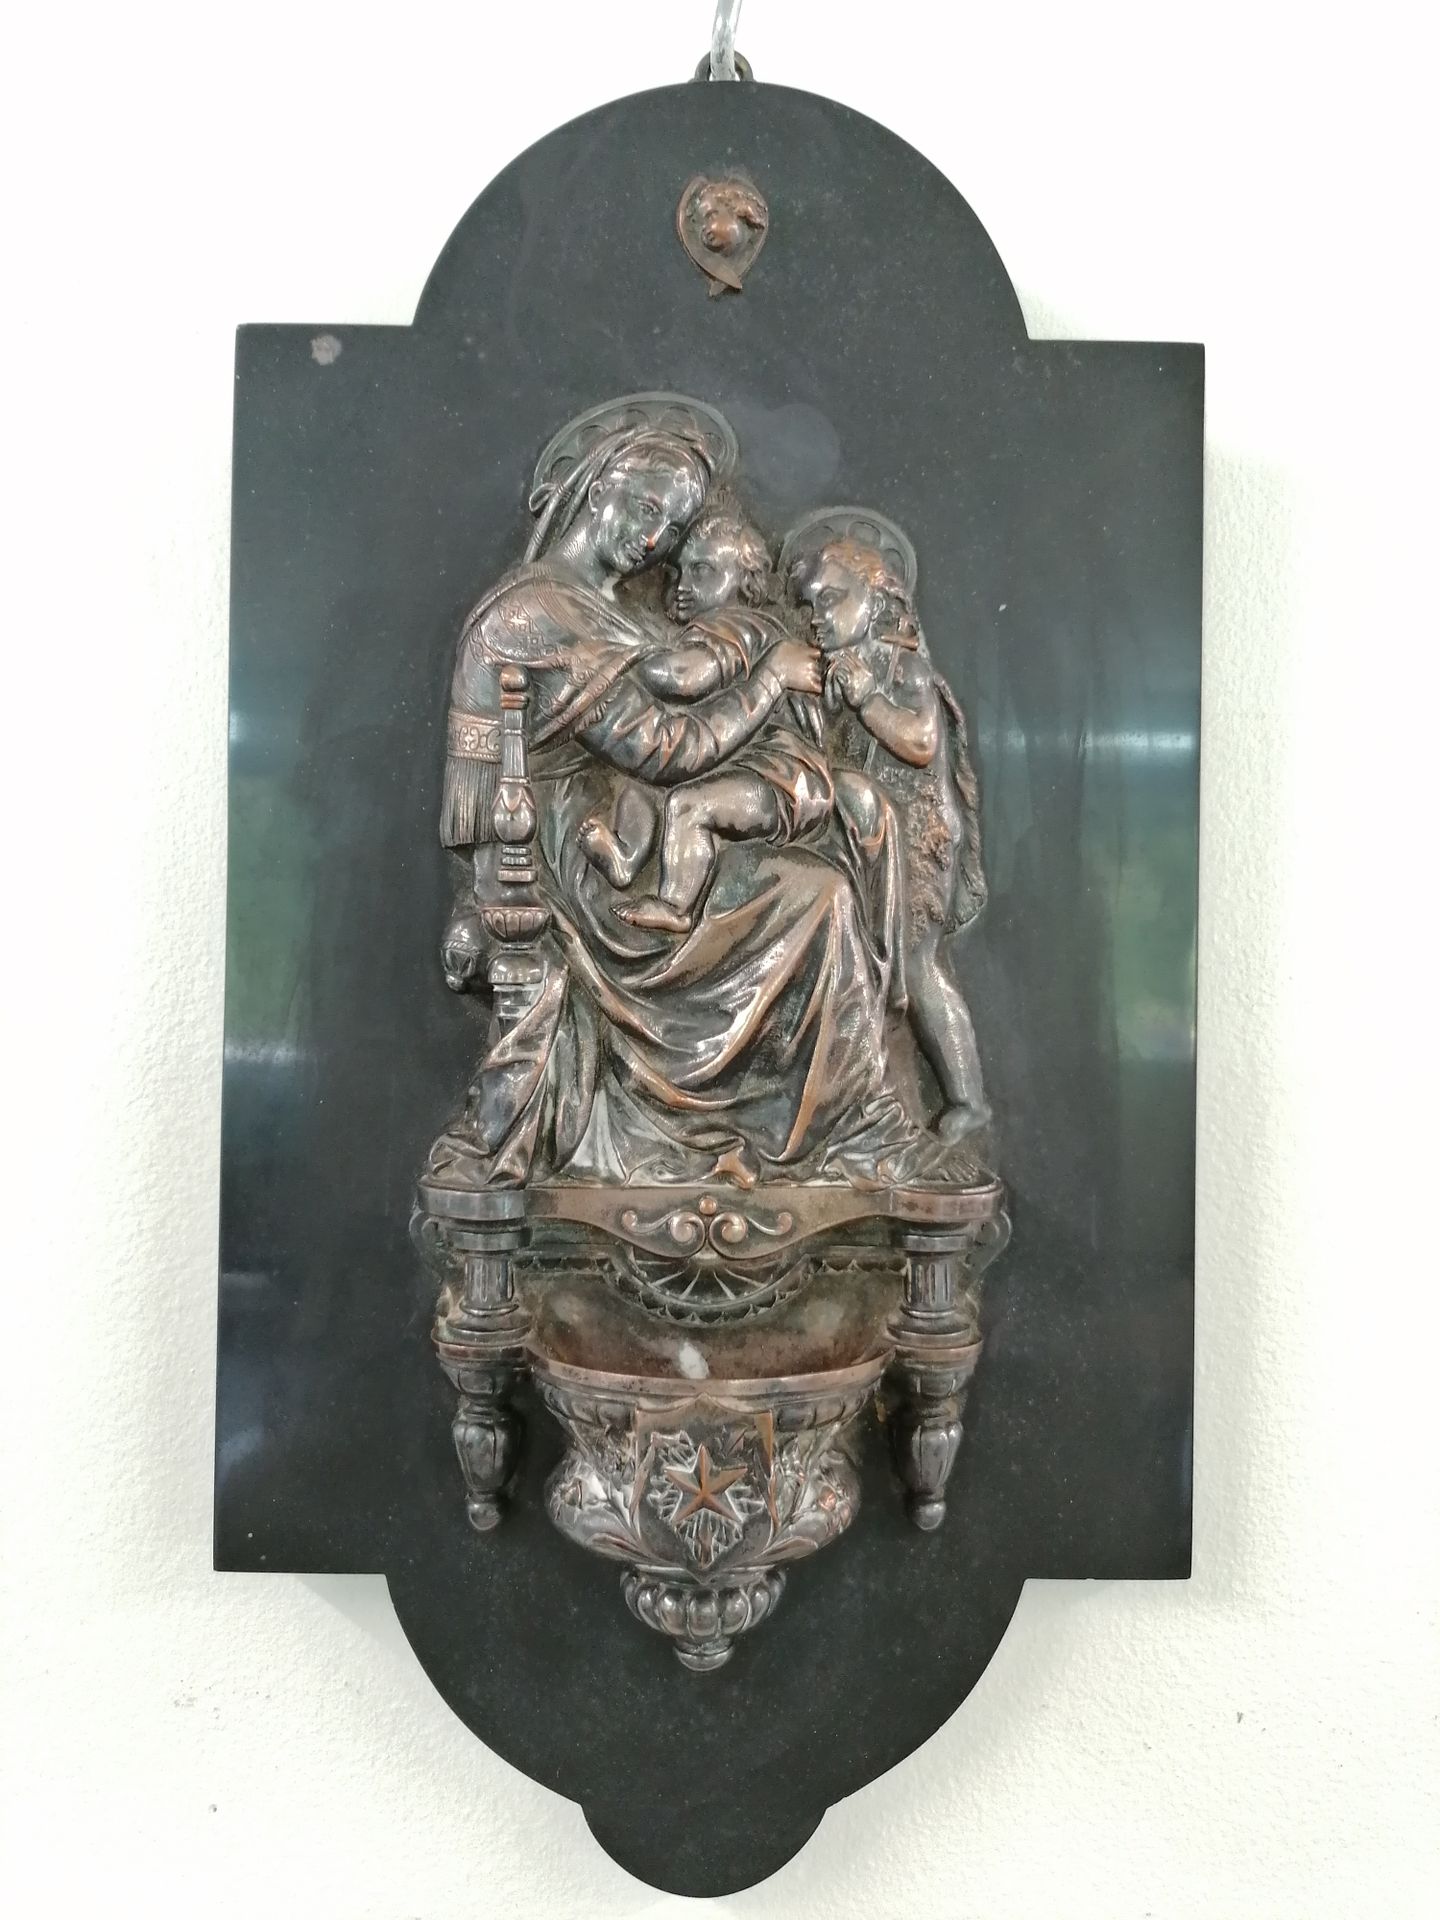 Null 蓓妮蒂尔

镀银铜质，高浮雕，代表圣母、圣婴和施洗者约翰，放在黑色大理石牌上。

H.37厘米

19世纪